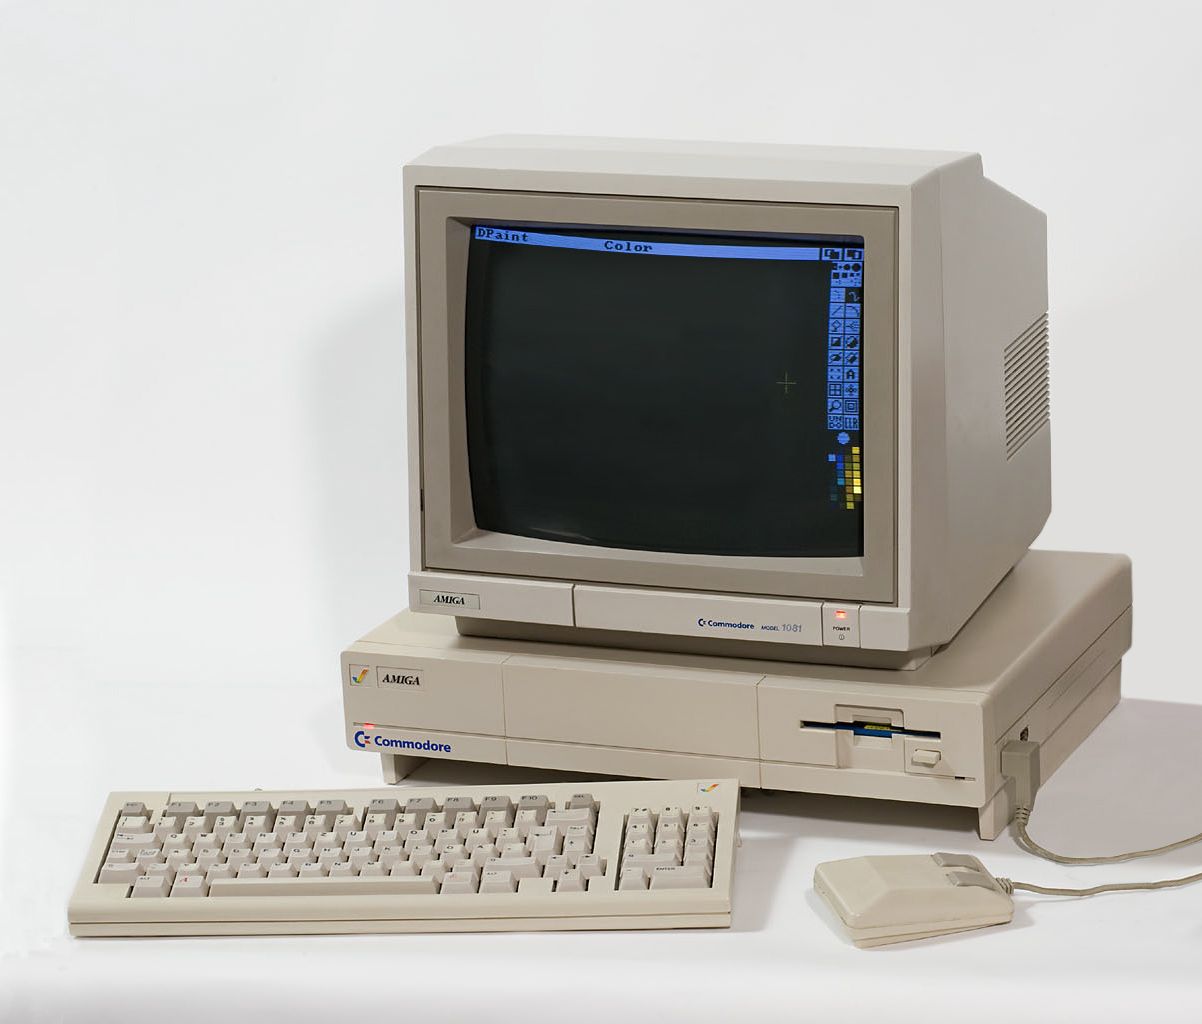 Commodore's Amiga 1000